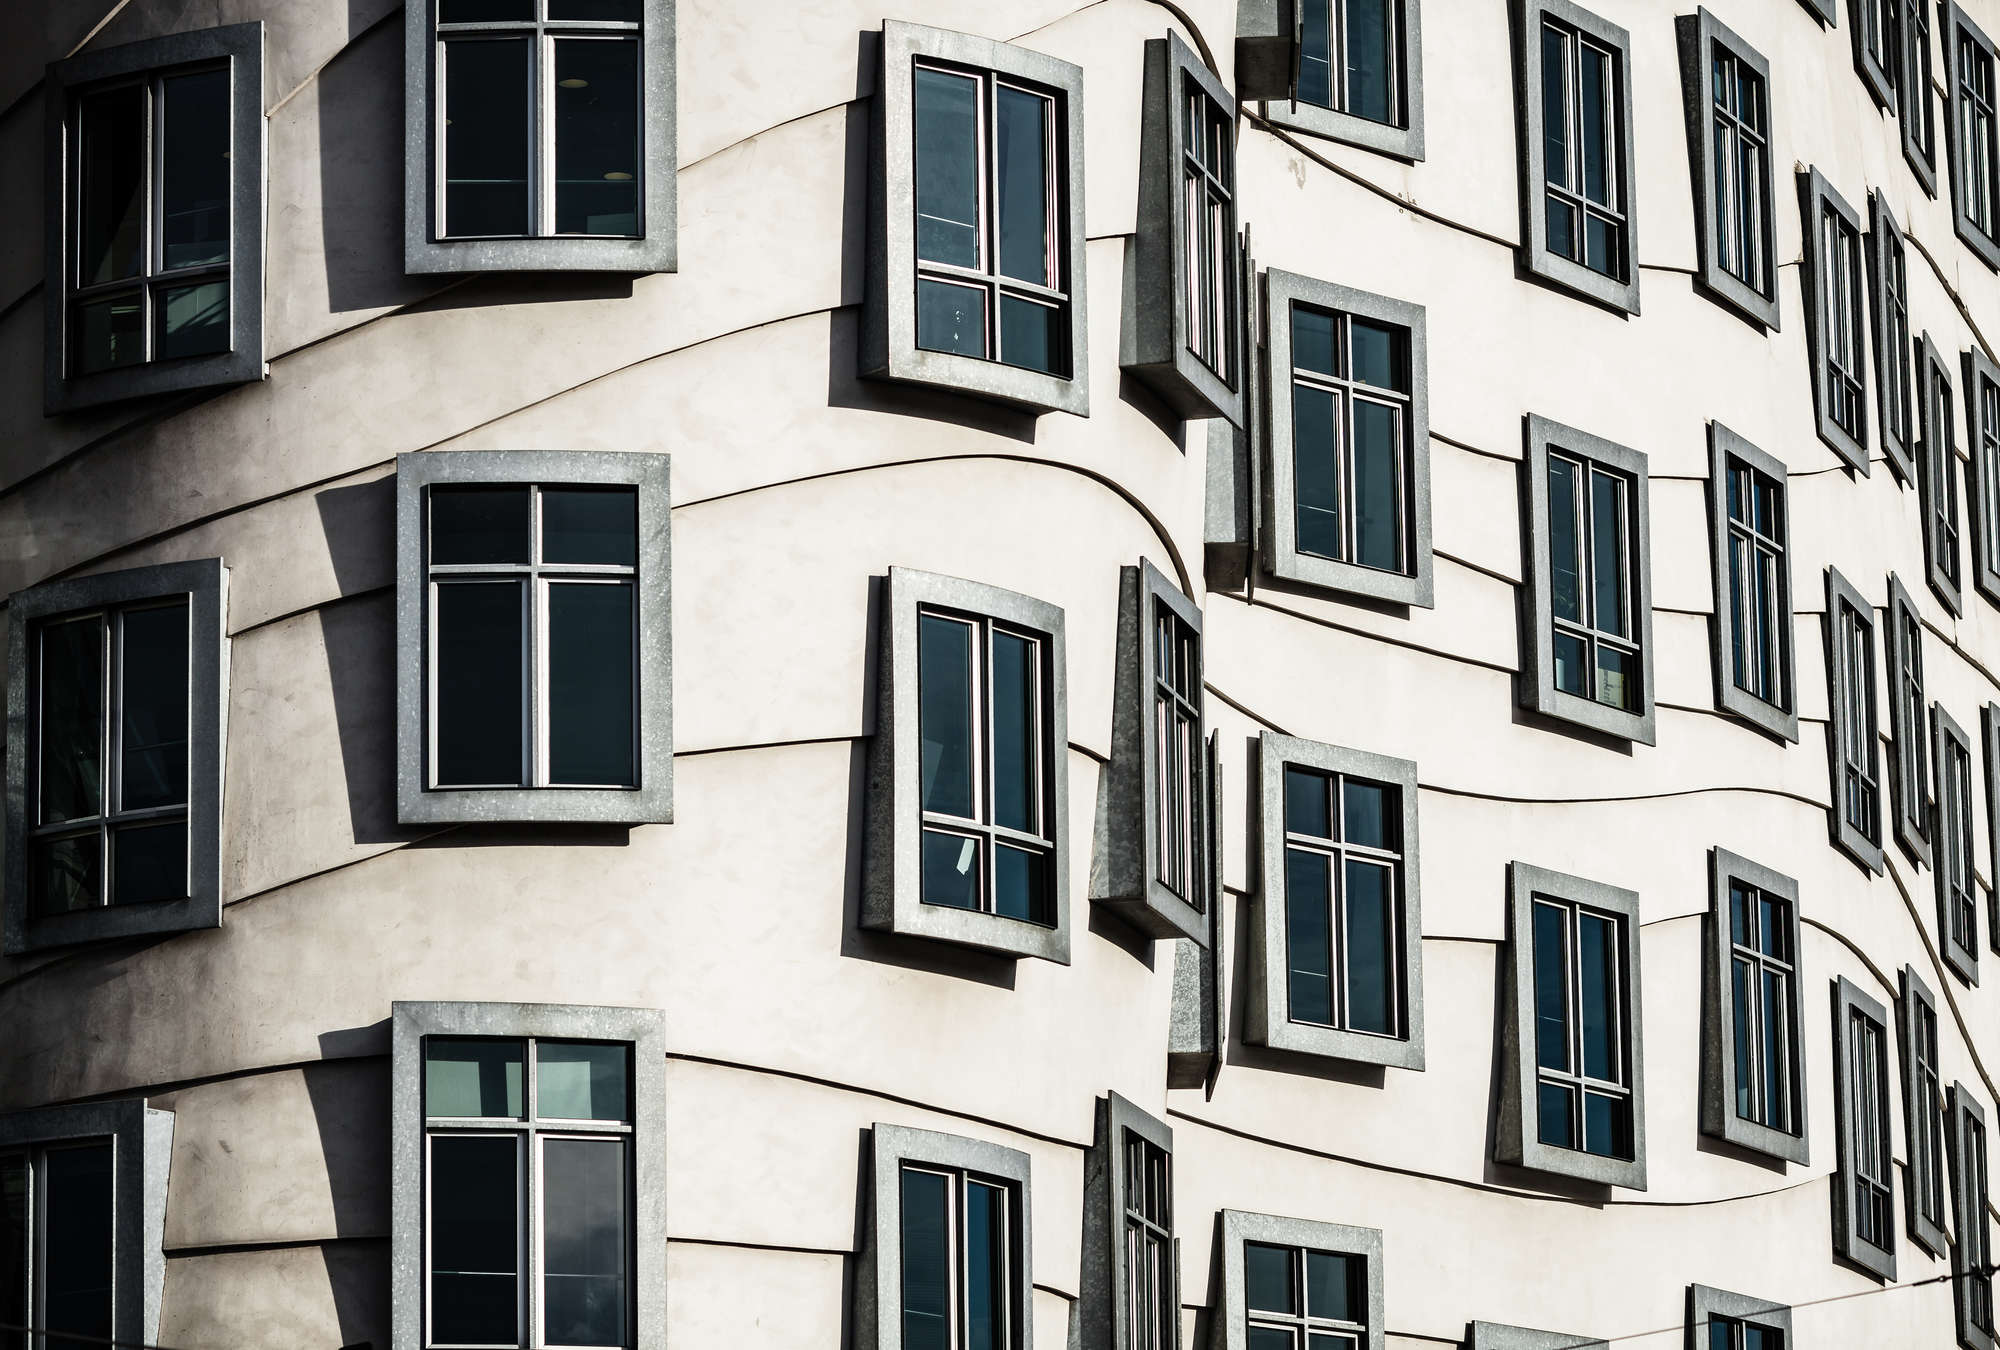             Sfondi per case danzanti - Architettura moderna delle finestre
        